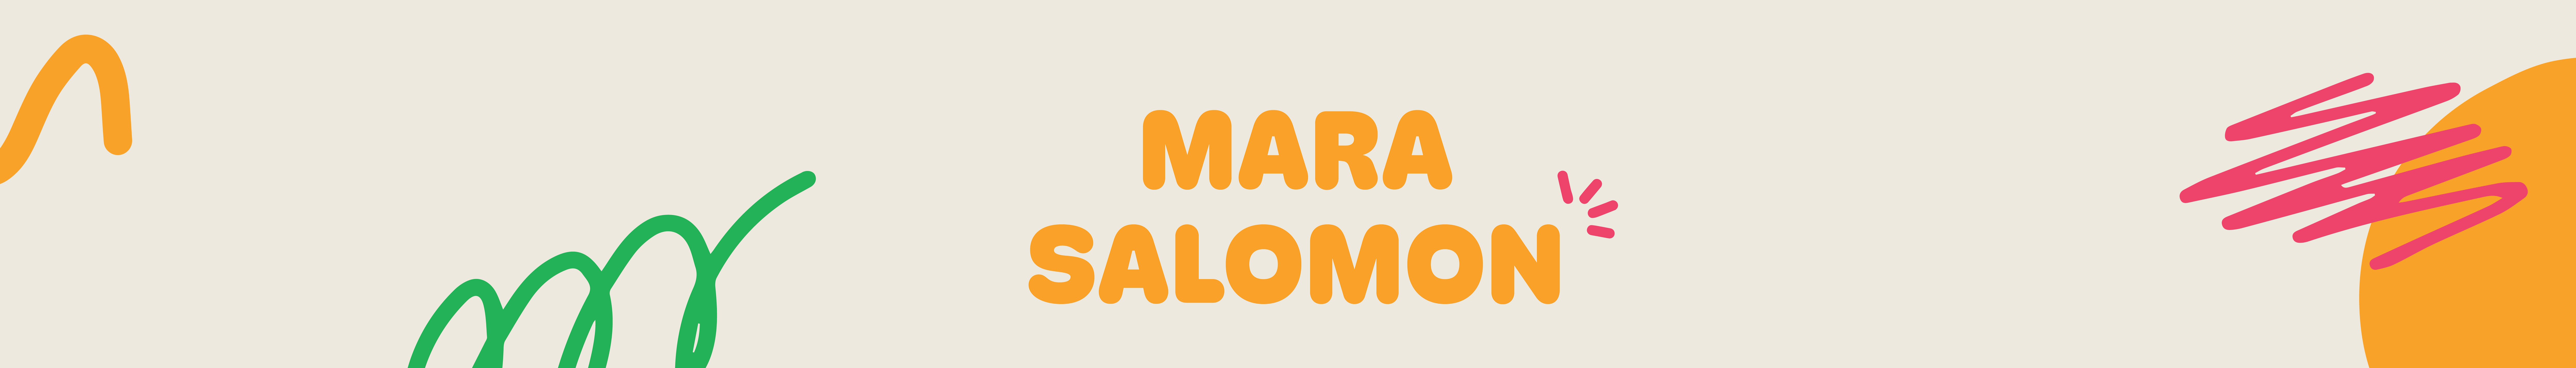 Mara Salomon 的個人檔案橫幅